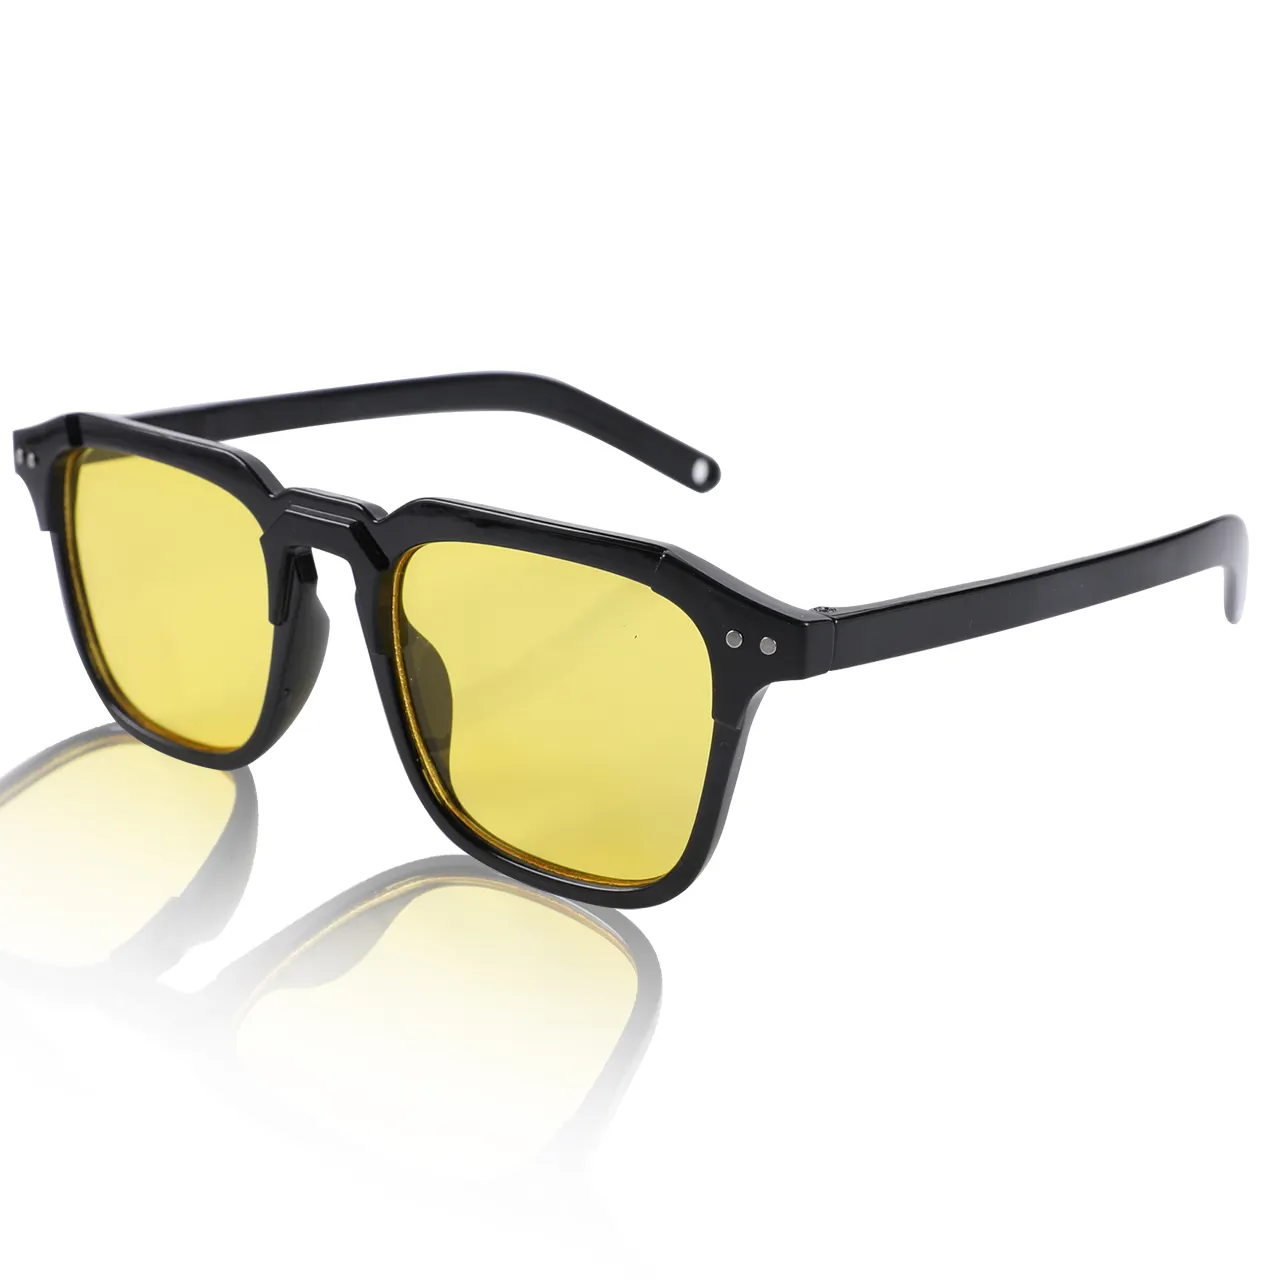 نظارات شمسية مصممة من زجاج الشمس الأعلى مبيعًا جودة مضمونة مربعة للنساء والرجال تستخدم منتجات الألبان في الهواء الطلق